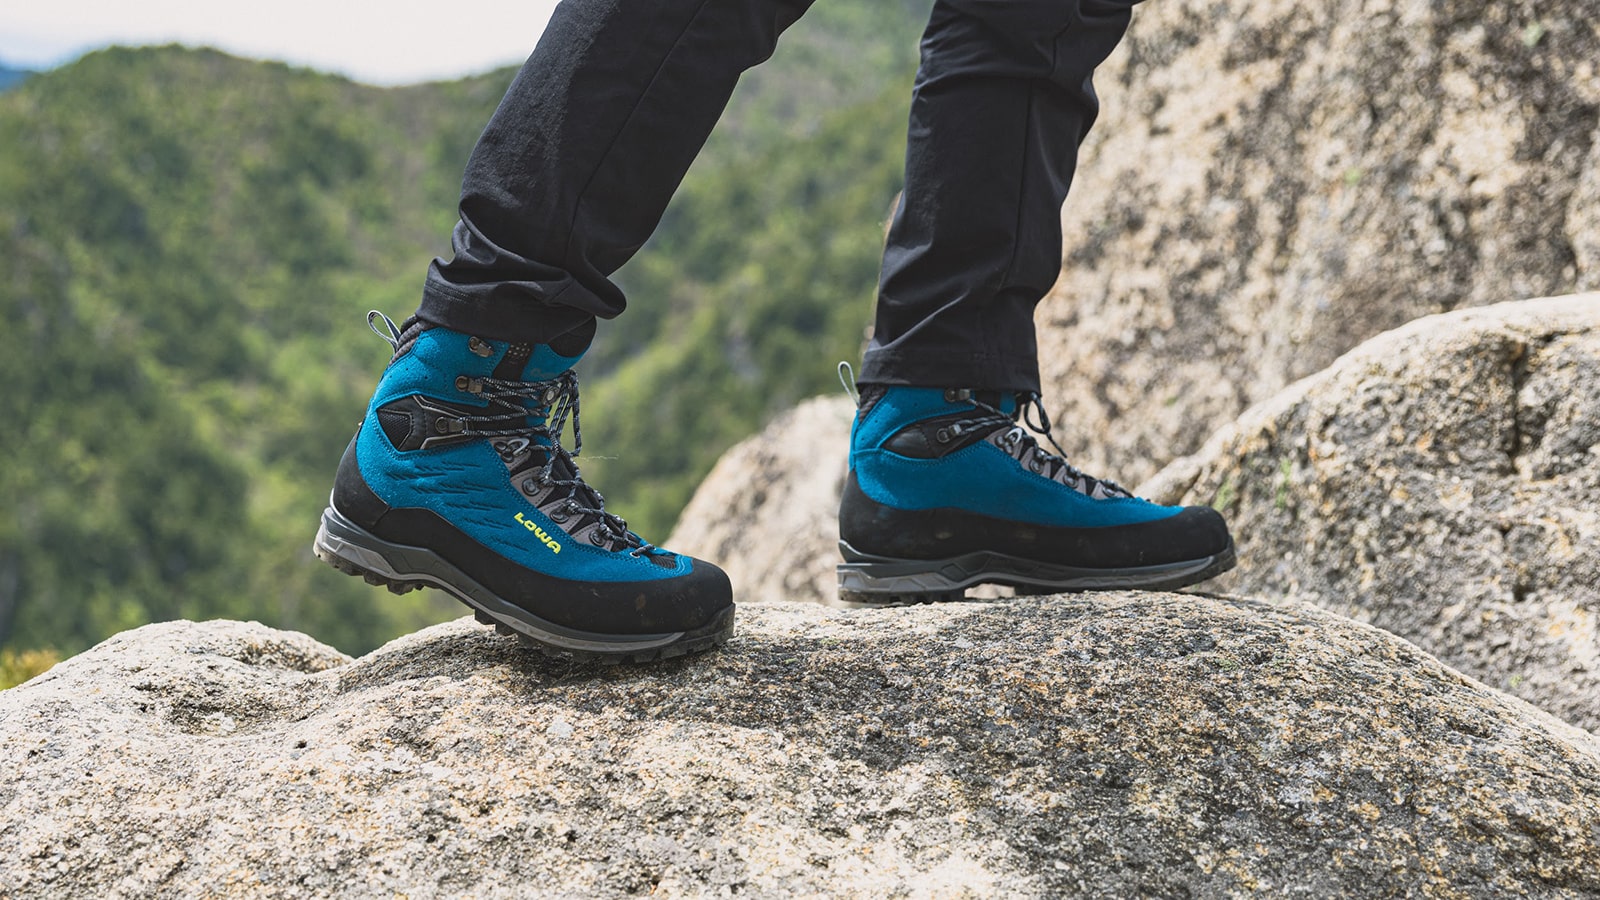 日本の山岳地帯を歩くためのハイブリッド登山靴- LOWAローバー公式